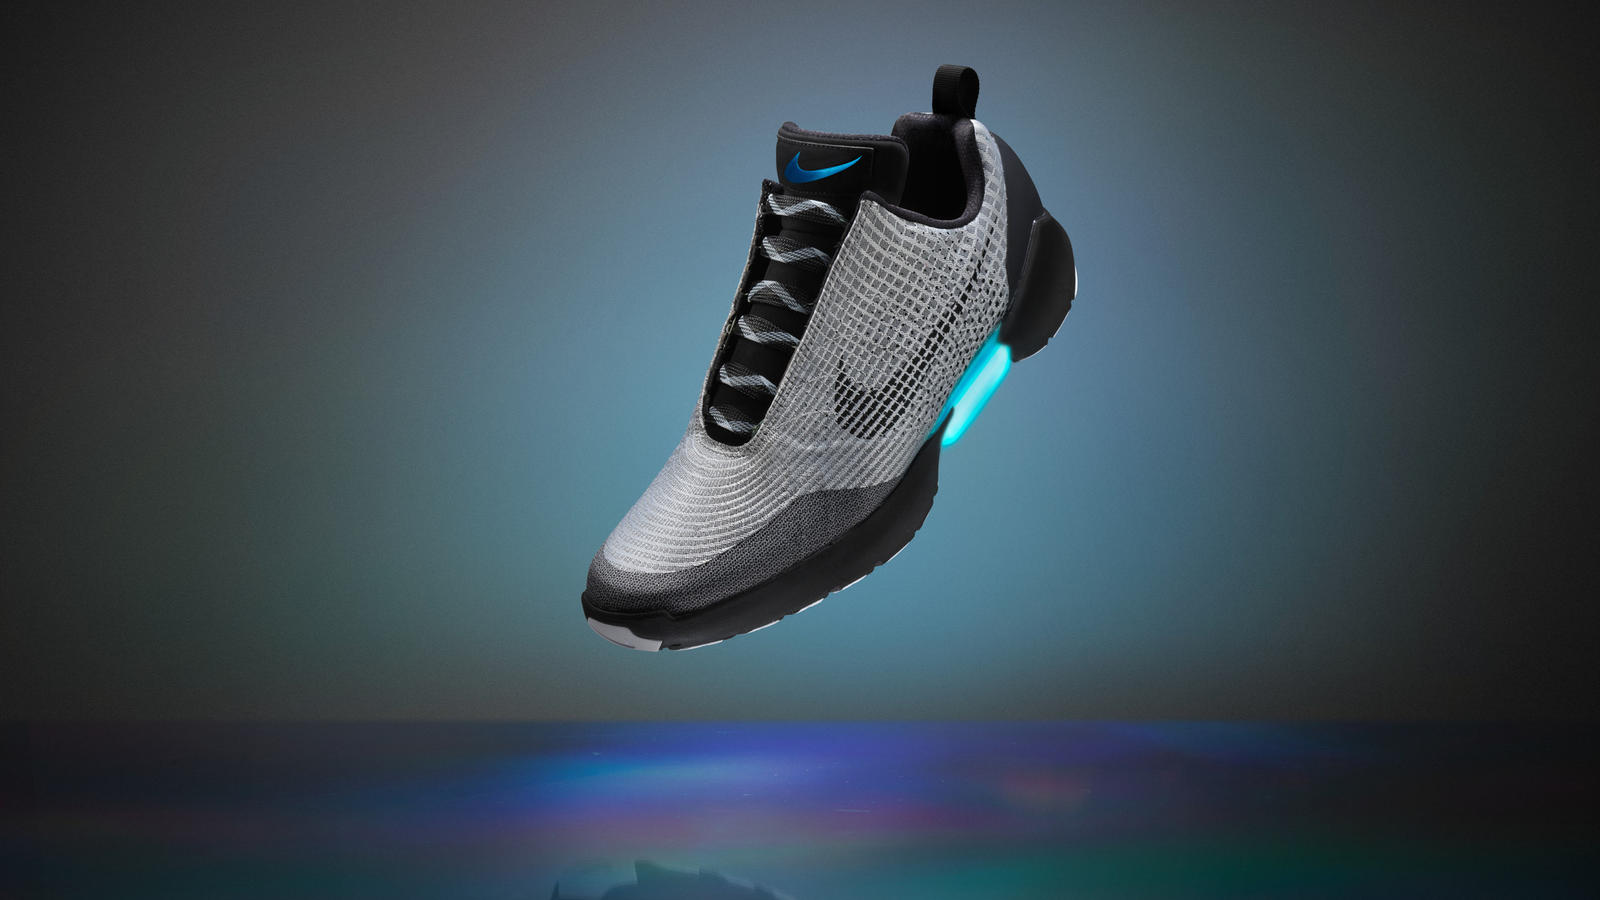 Nike lanza zapatos deportivos inteligentes - CNN Video